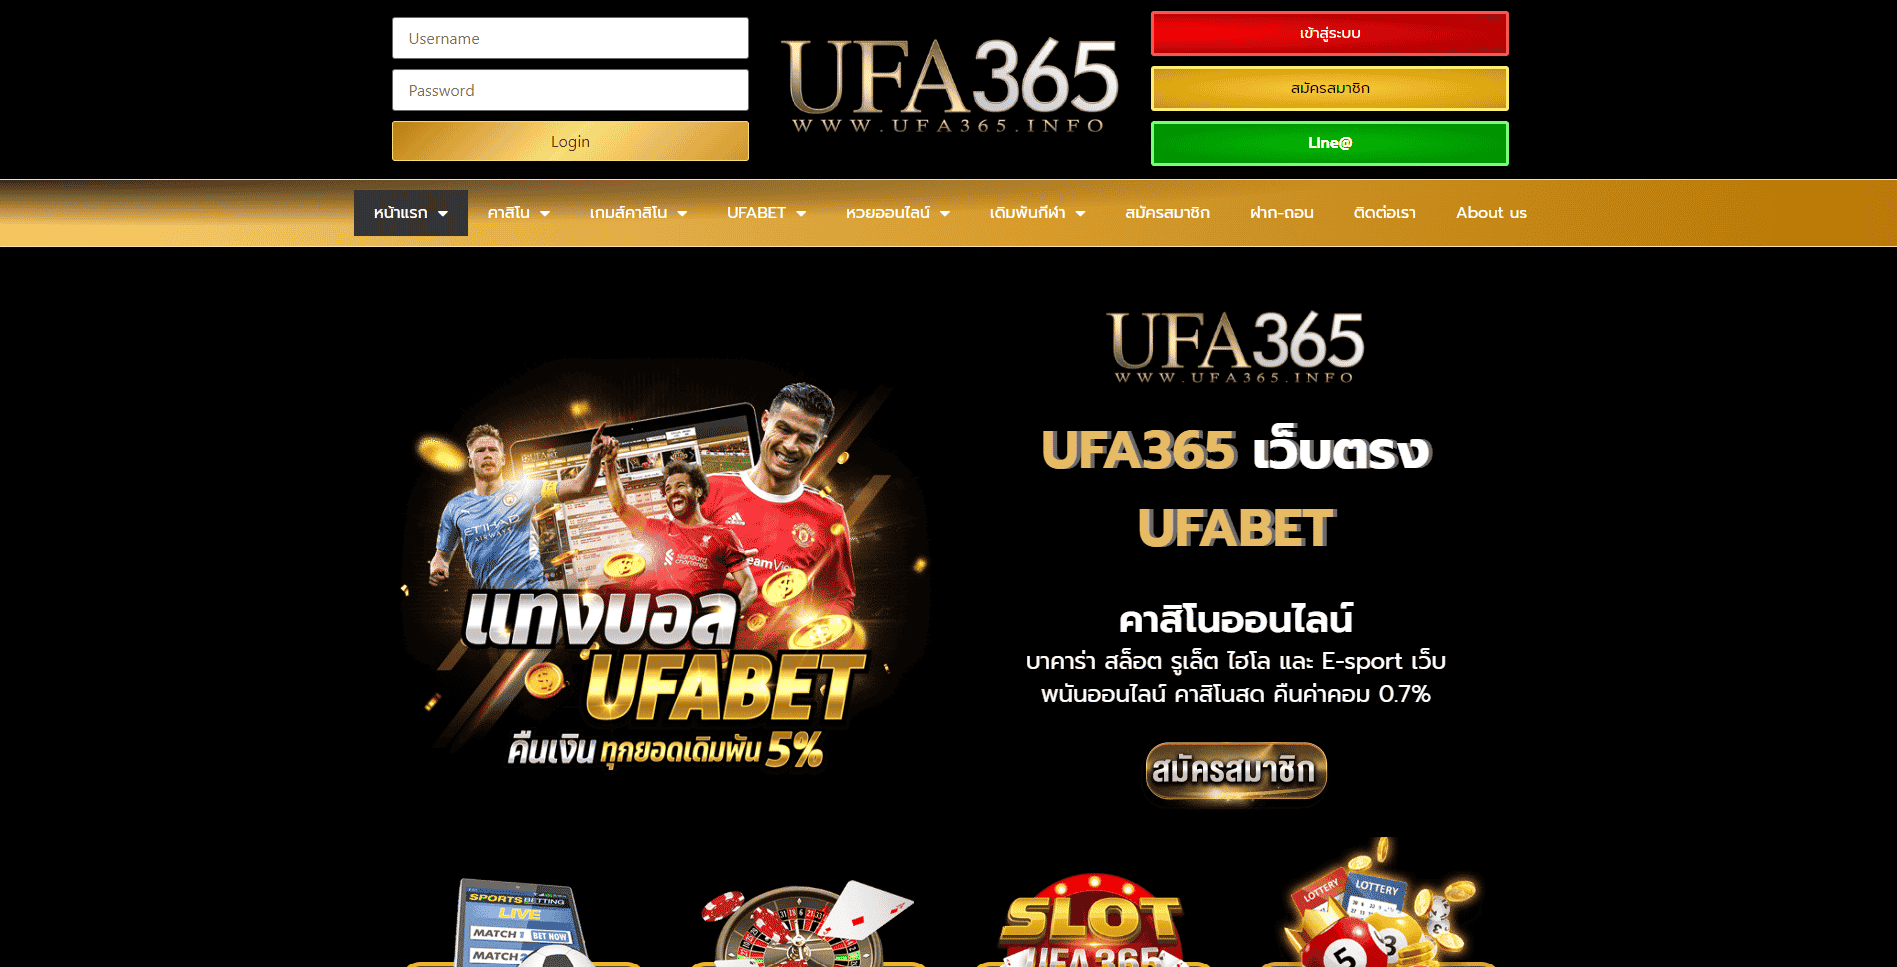 Ufa365info